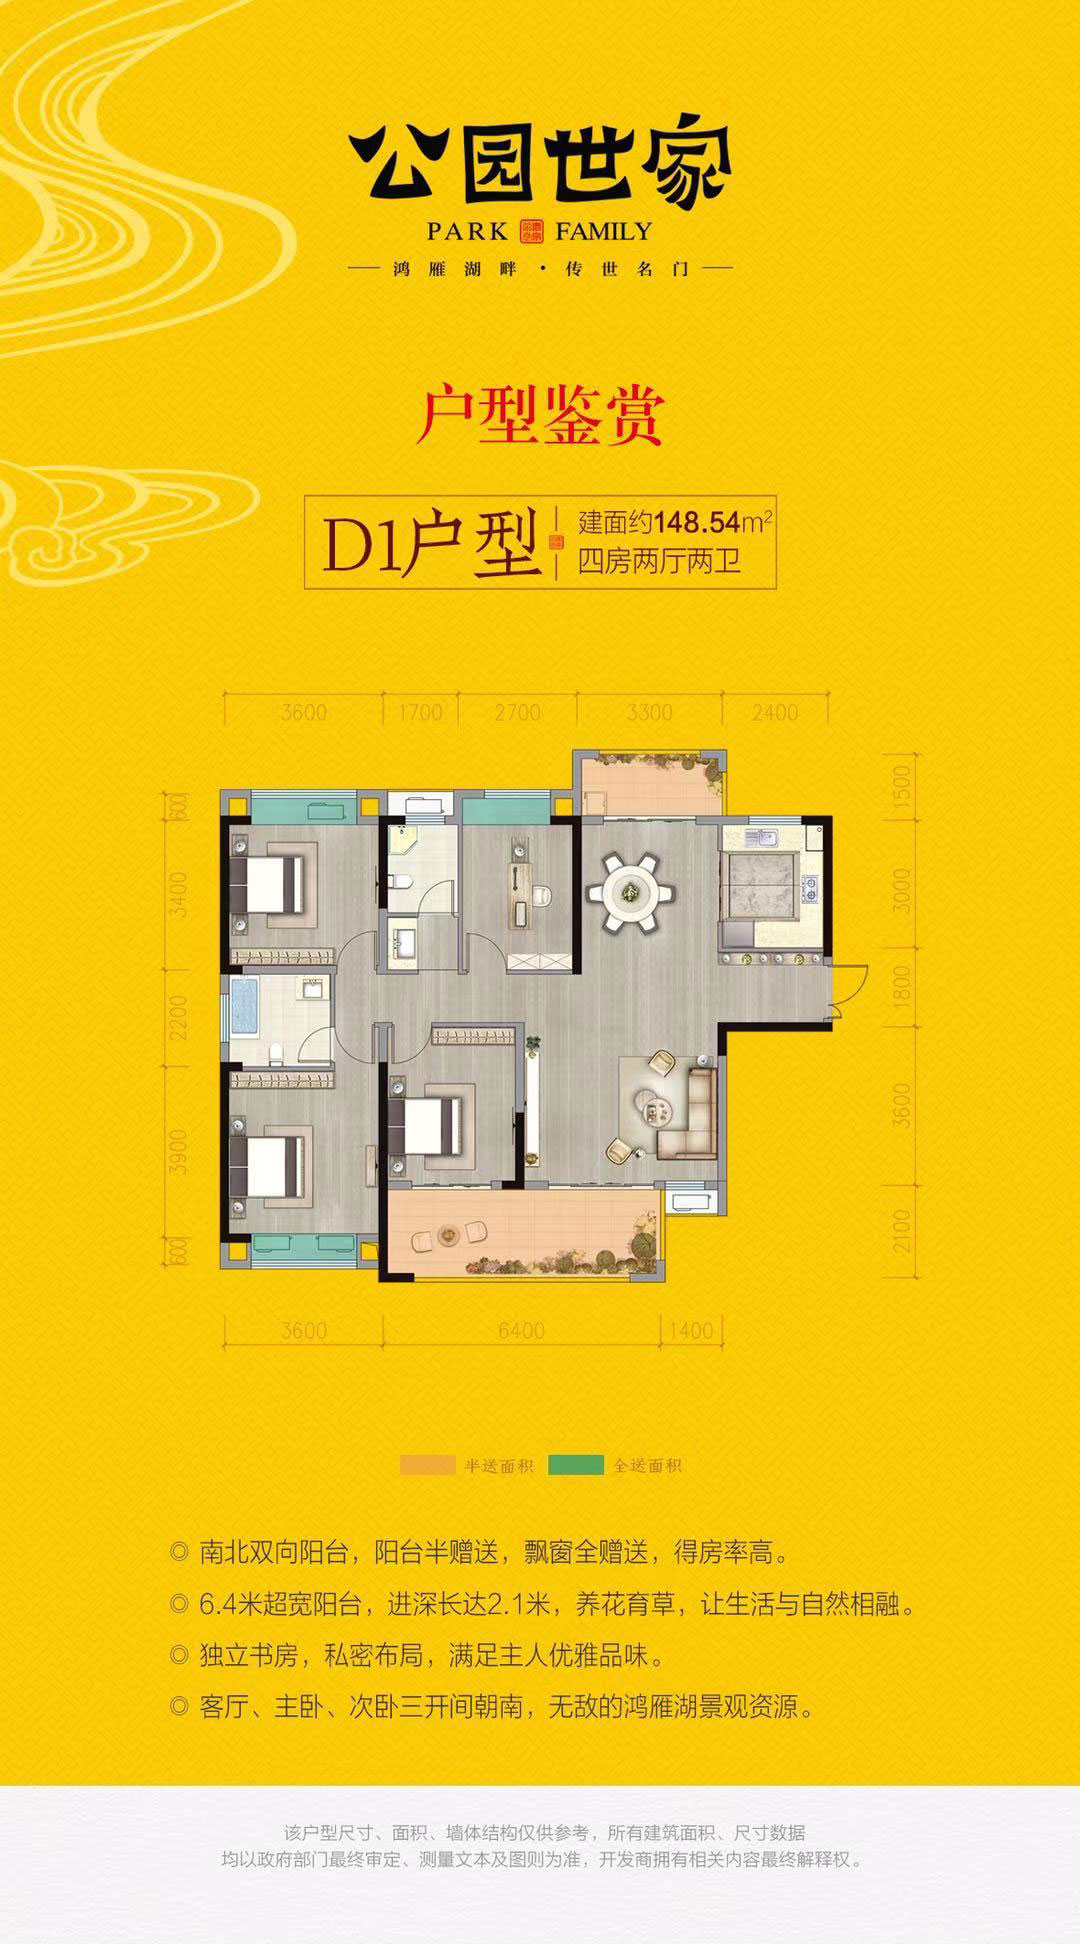 益阳-南县公园世家为您提供该项目D1户型图片鉴赏